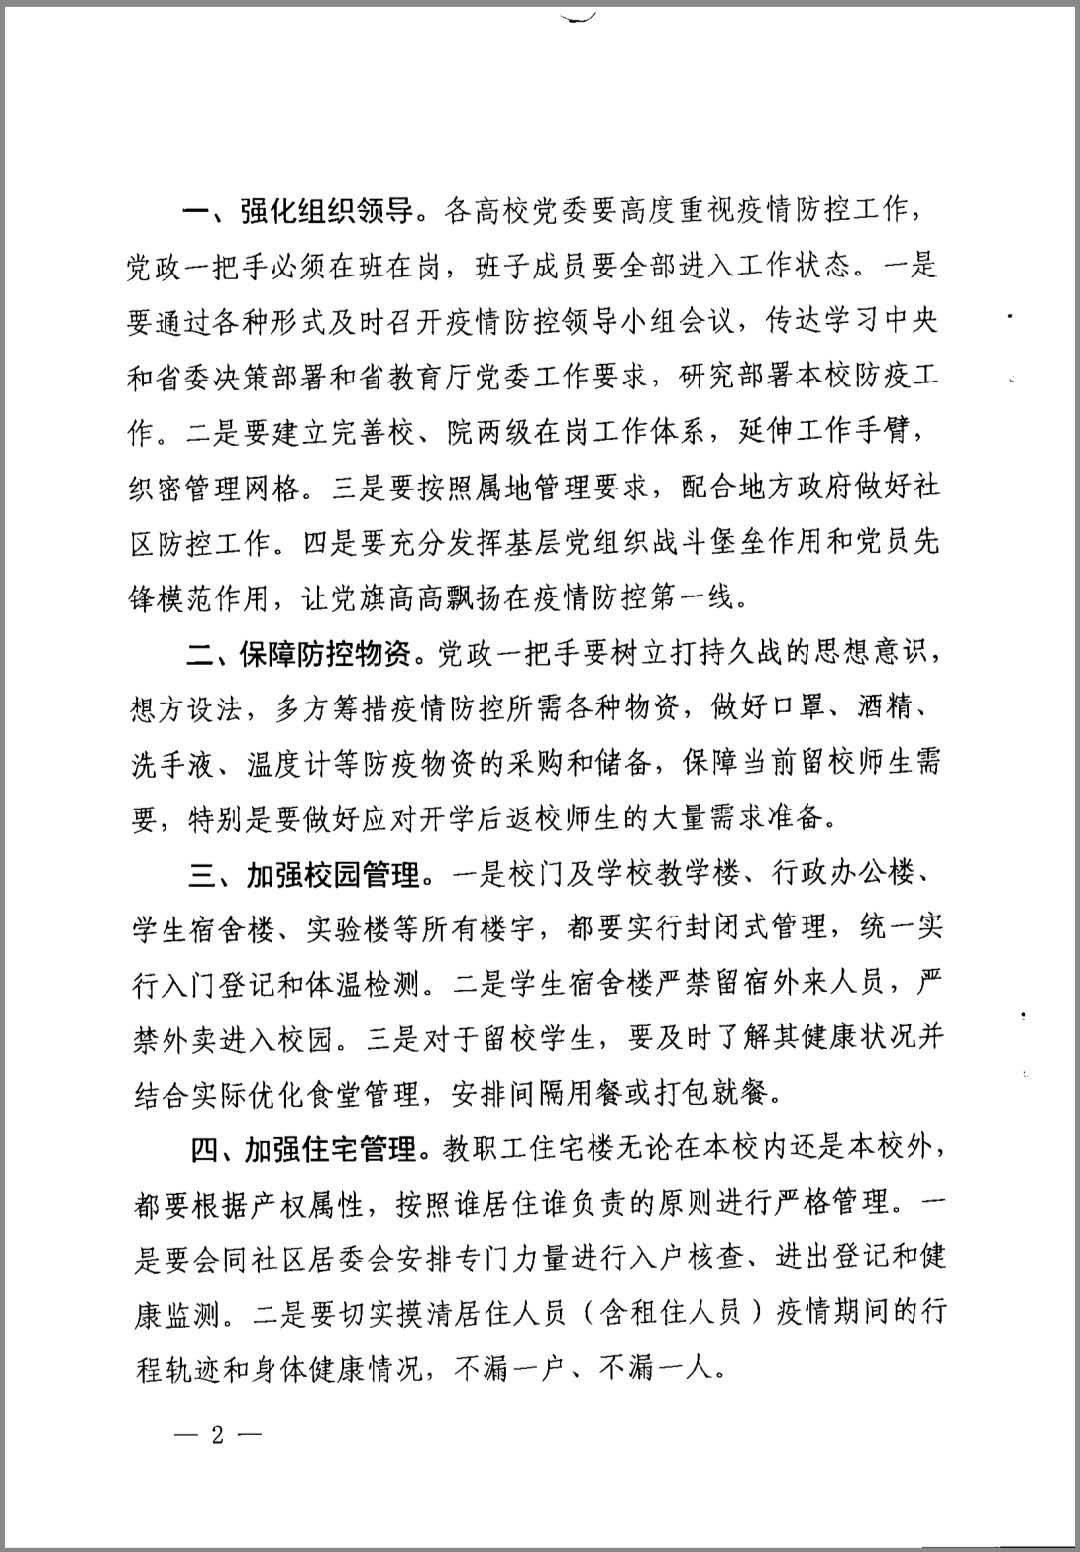 中共海南省教育厅委员会关于进一步做好当前高校疫情防控工作的通知